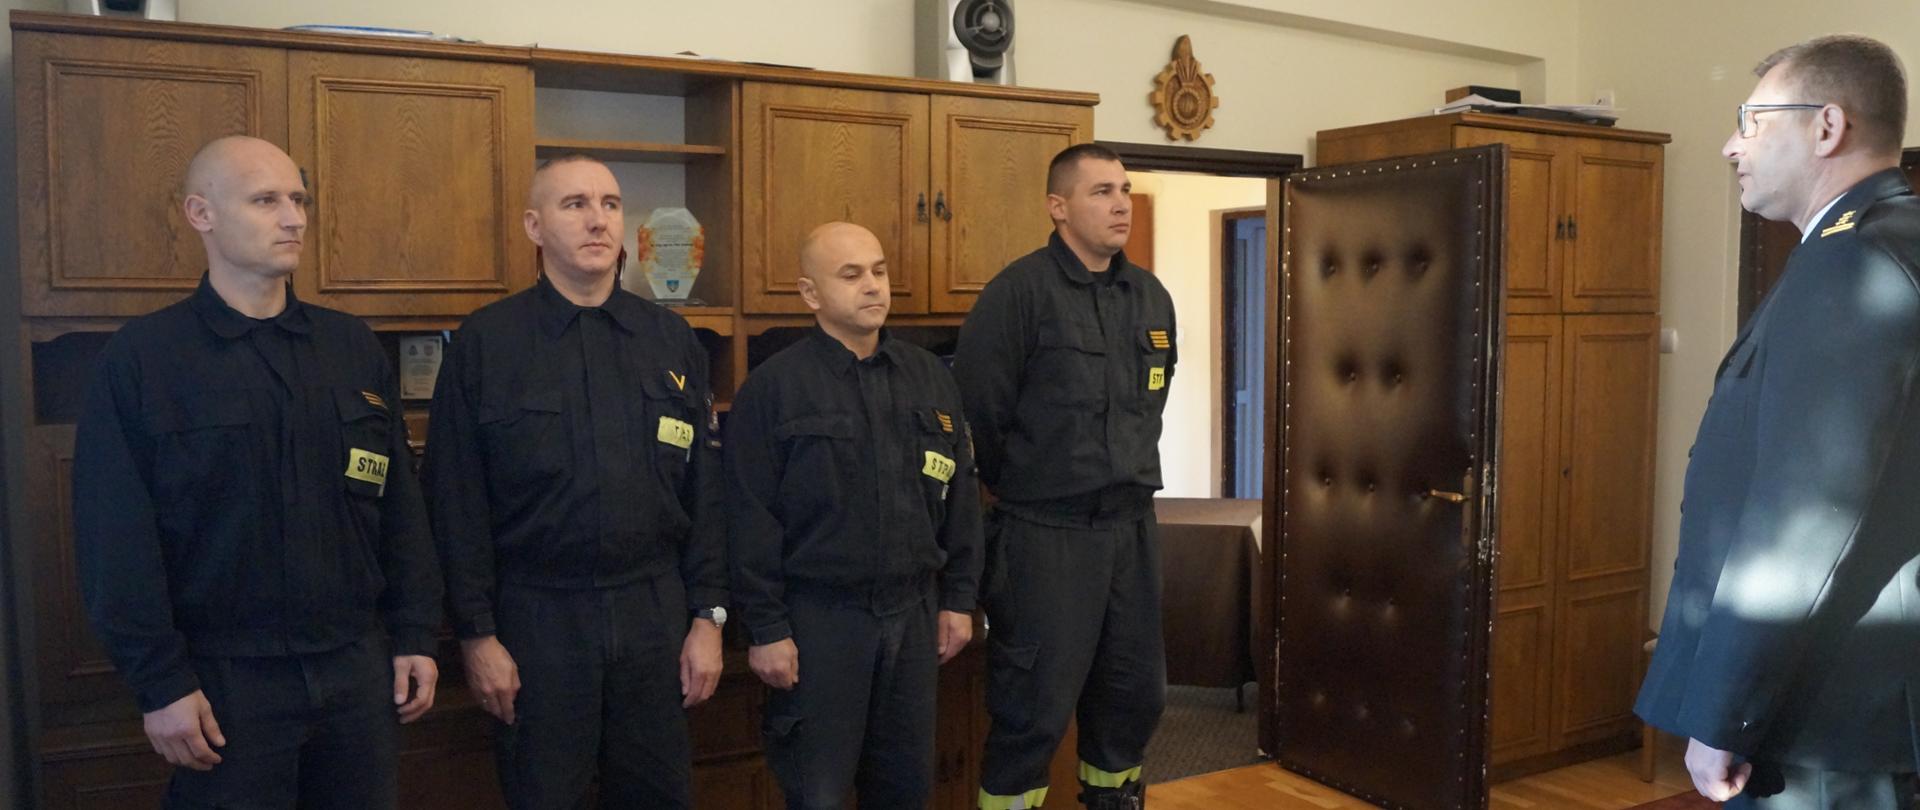 Czterech strażaków podczas wręczania awansu